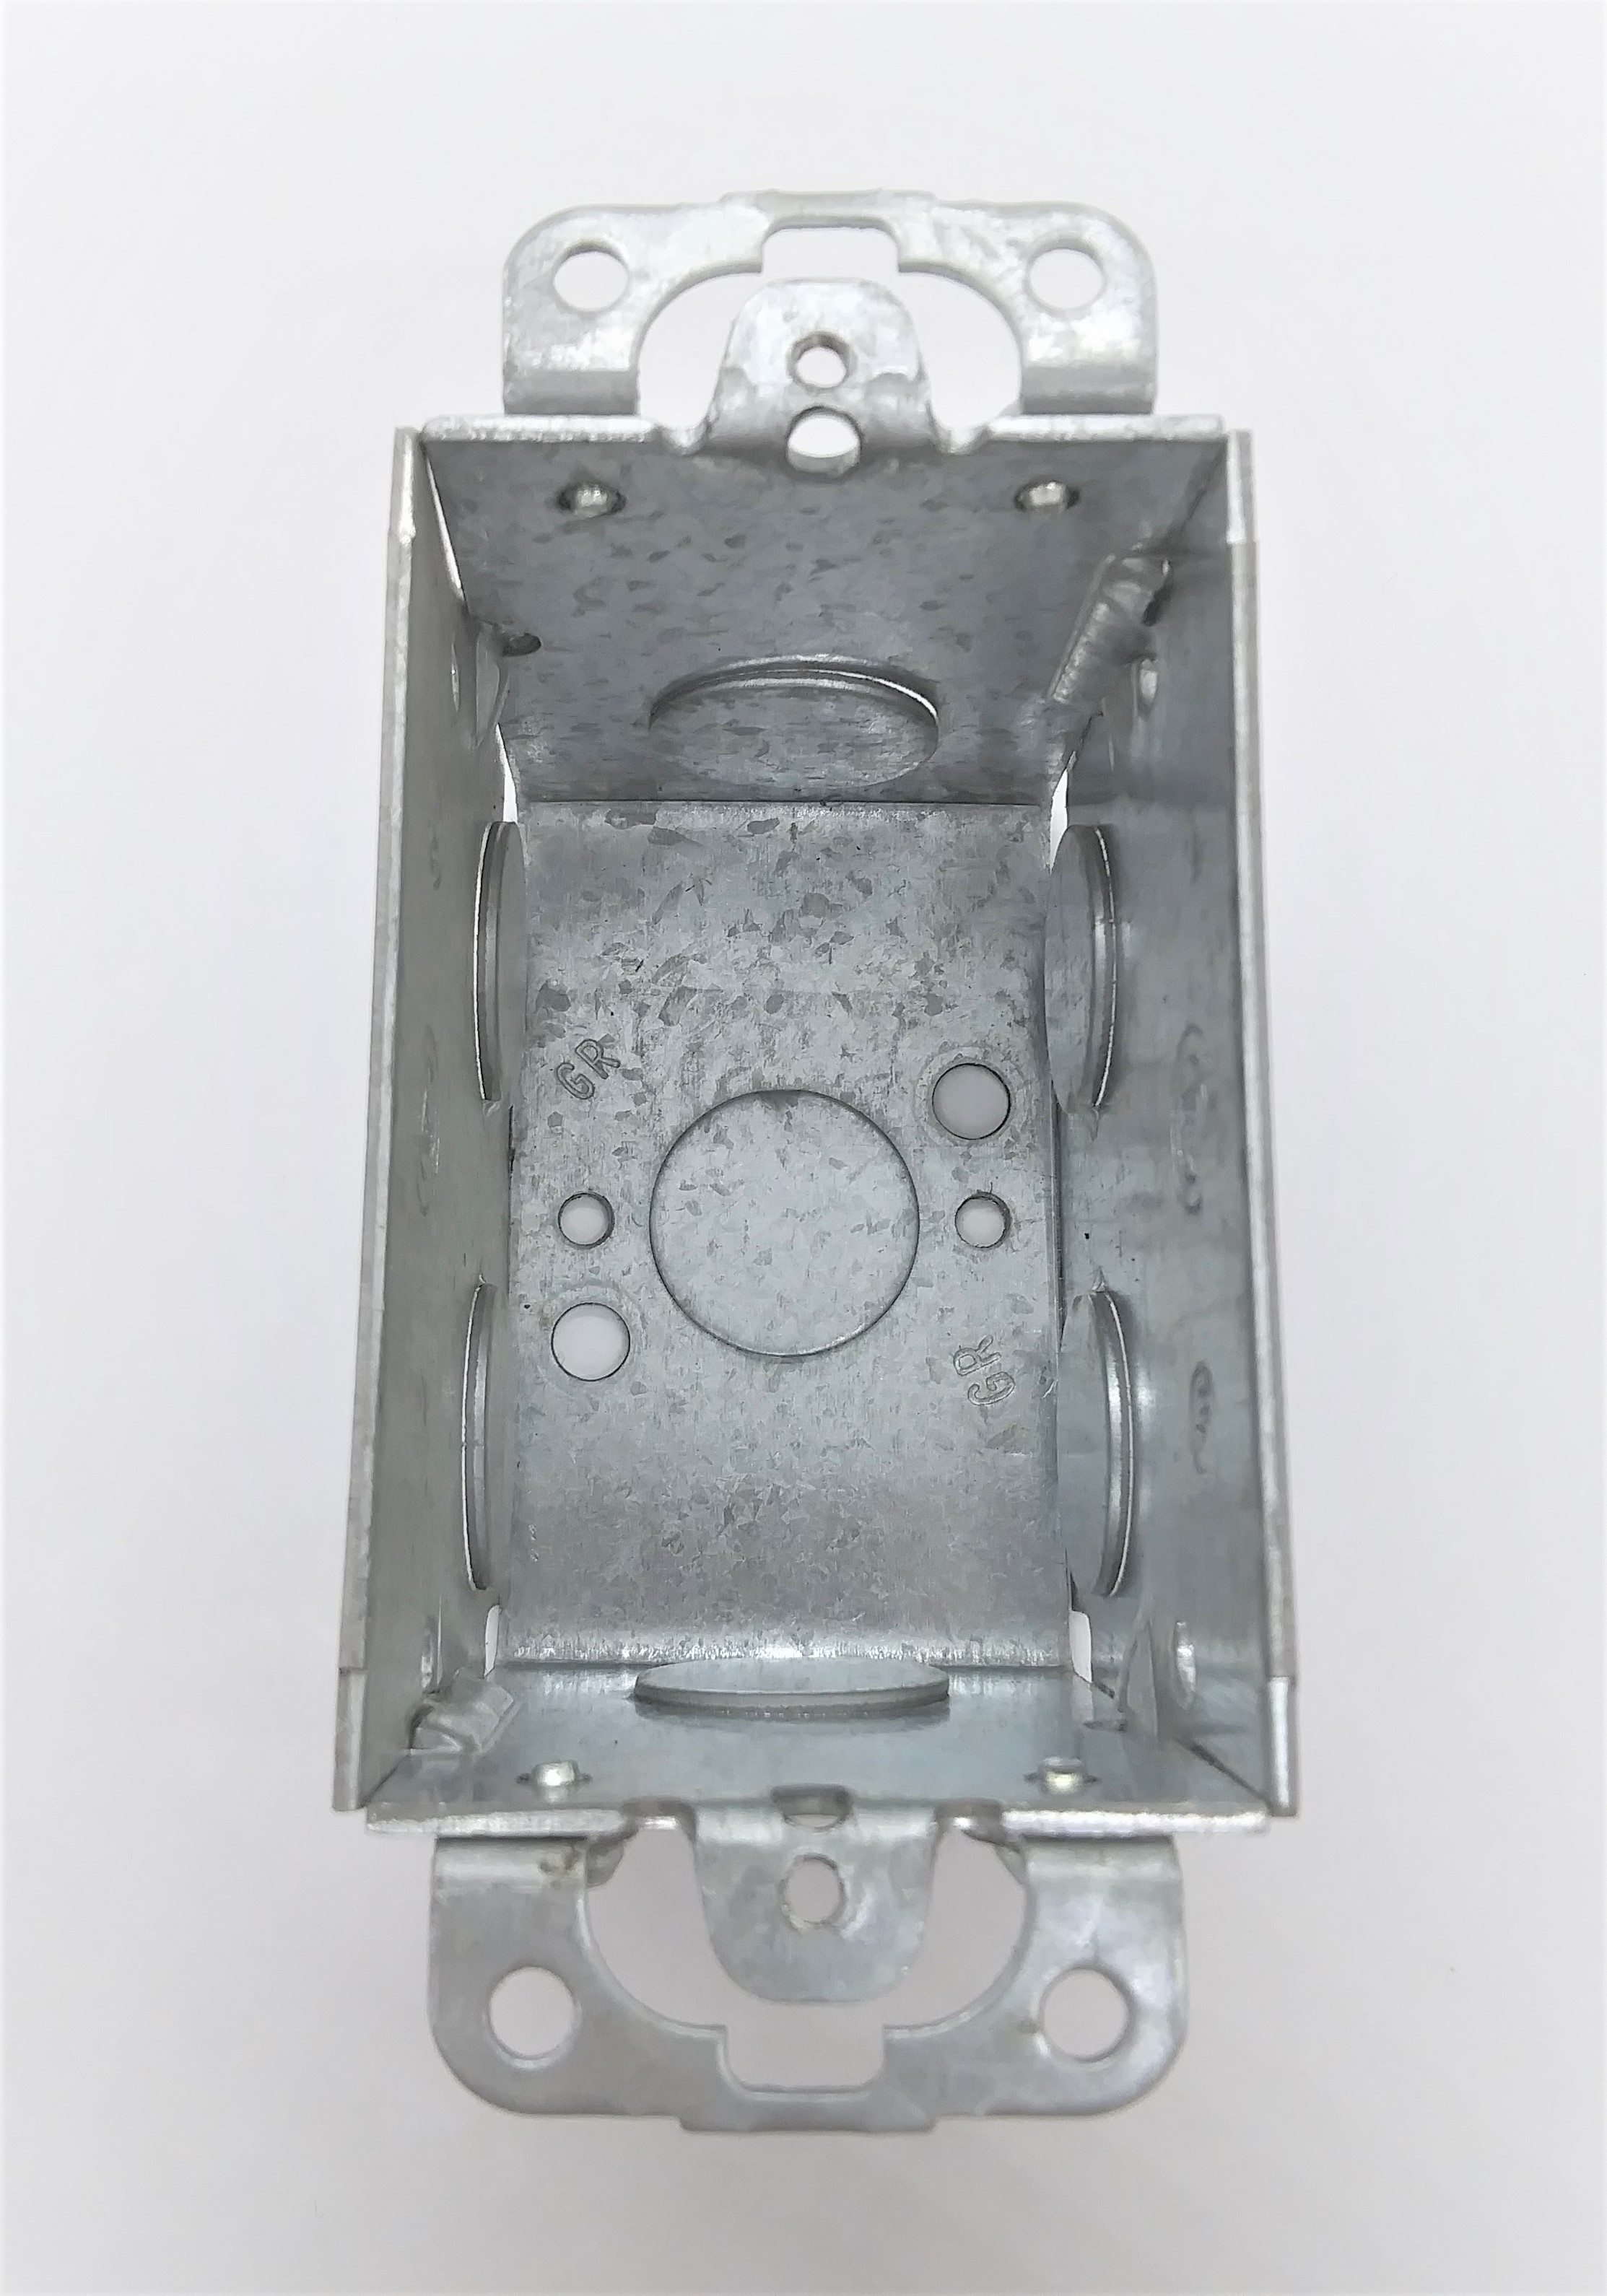 Appleton 222 3x2in 2-1/2in deep Conduit Switch Box w/Plaster Ears - A.  Louis Supply